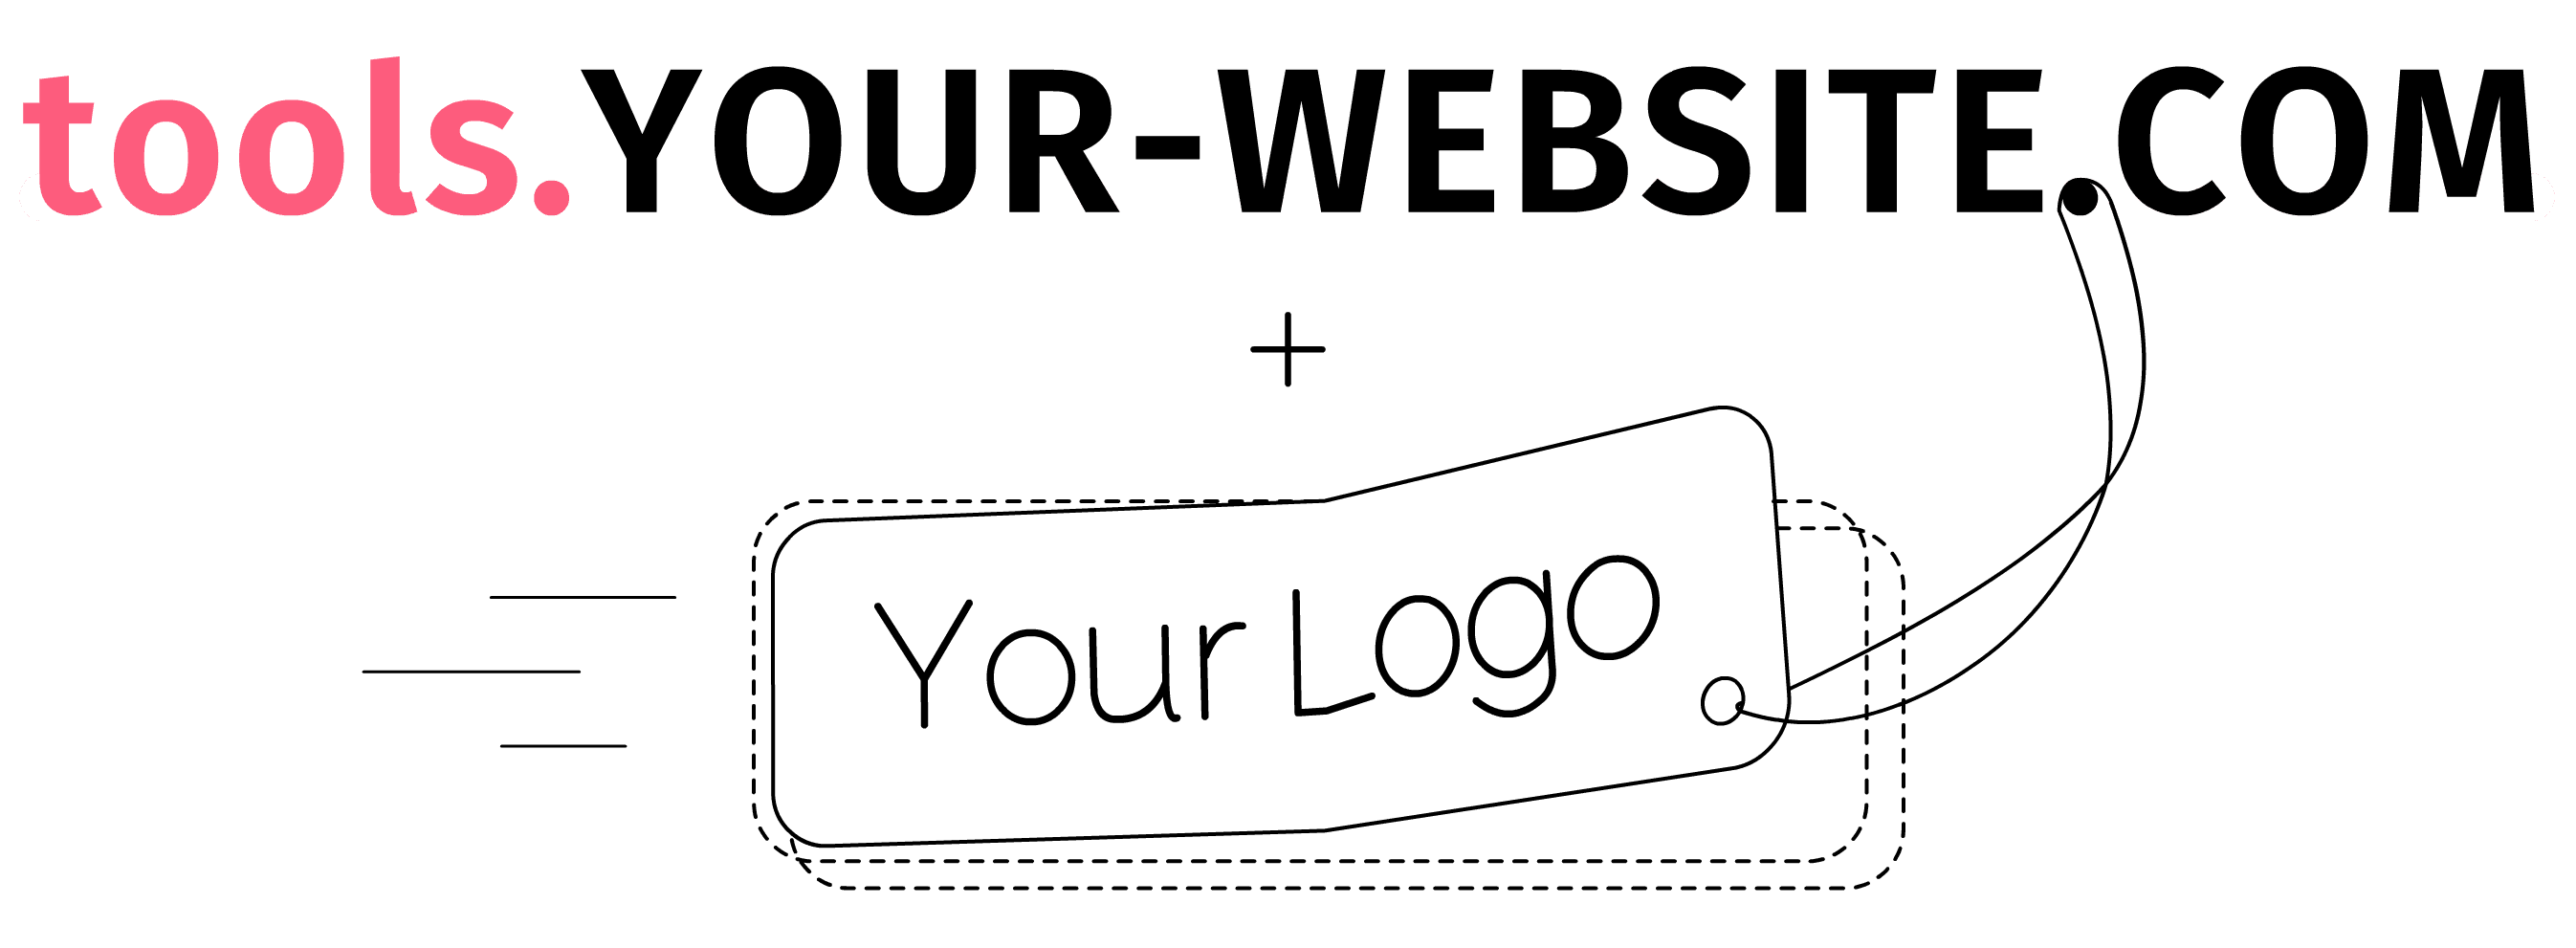 Abbildungslink mit Subdomain der White-Label-Integration und Logo